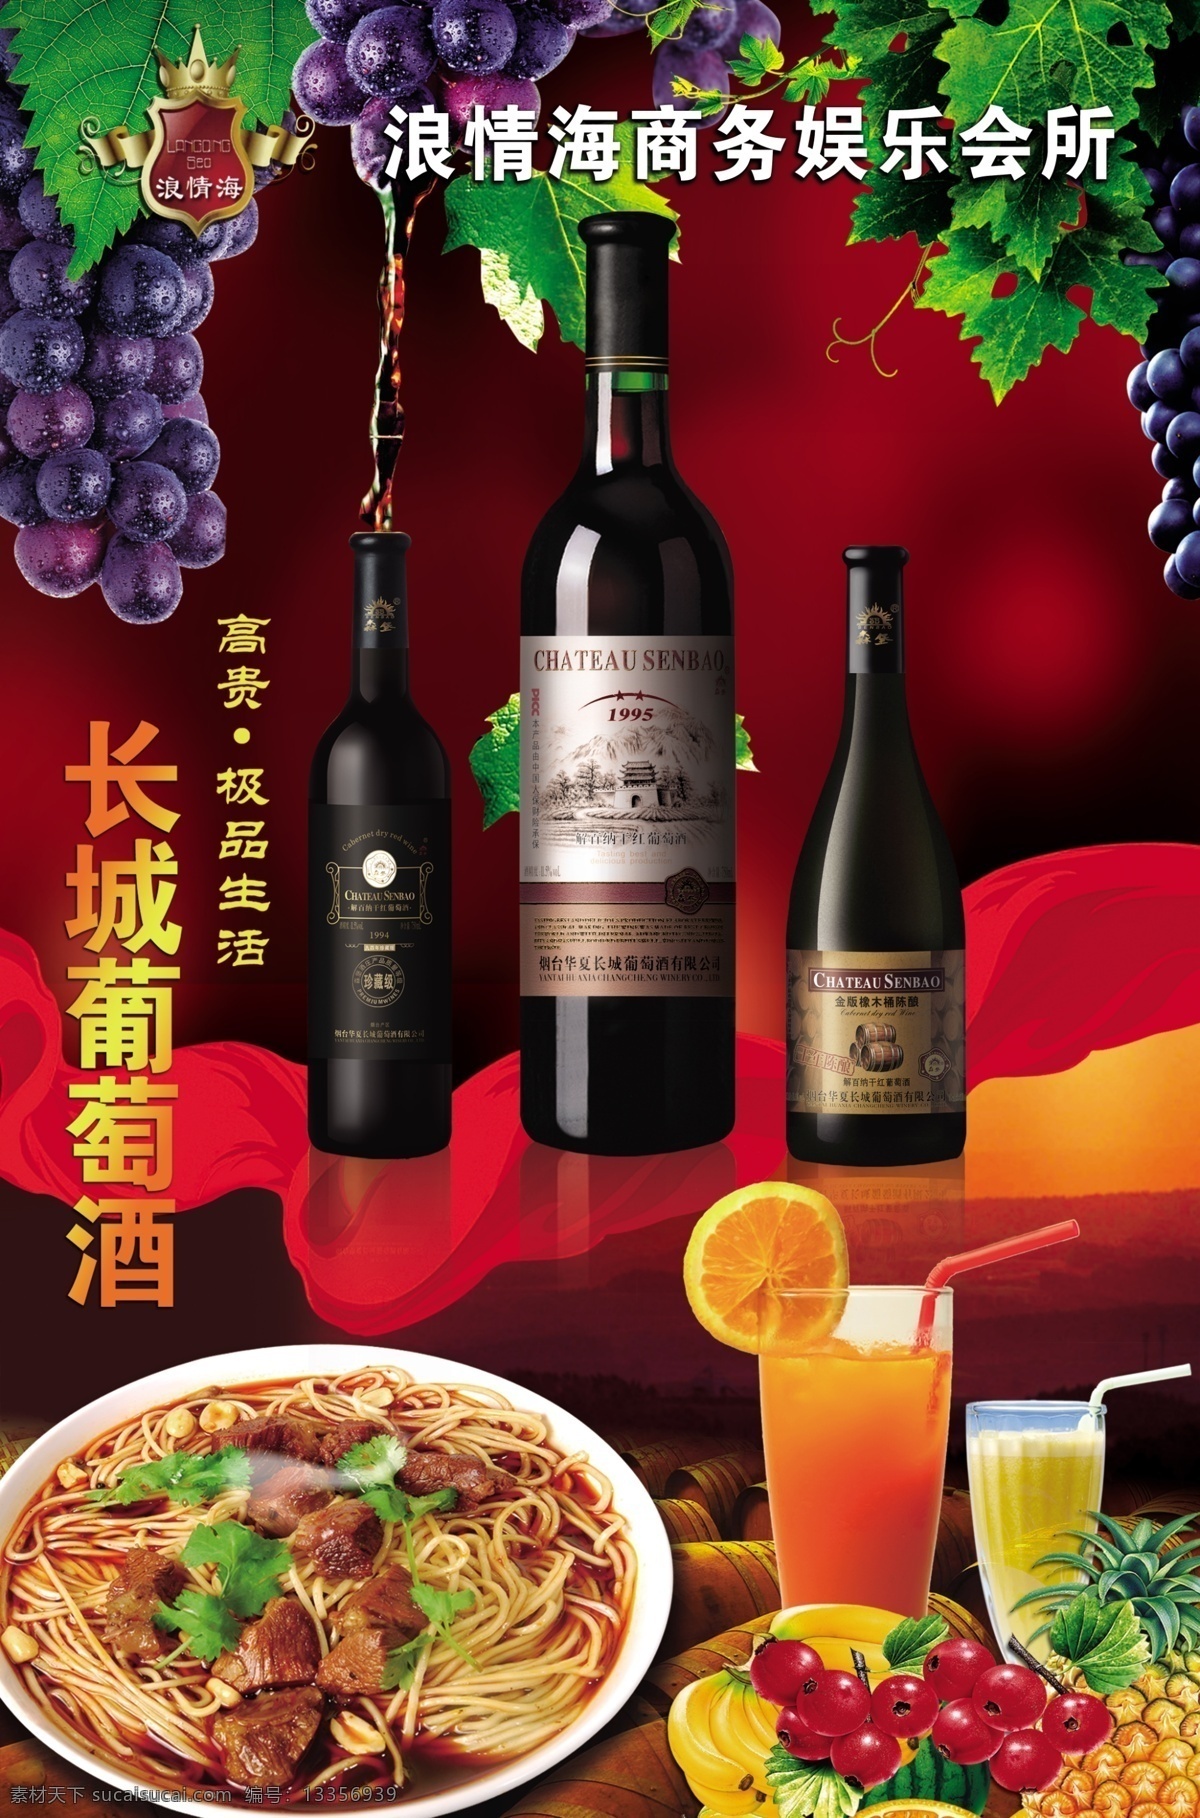 长城 葡萄酒 红酒 饮料 餐饮 长城葡萄酒 葡萄架 主食 广告设计模板 源文件 psd素材 红色